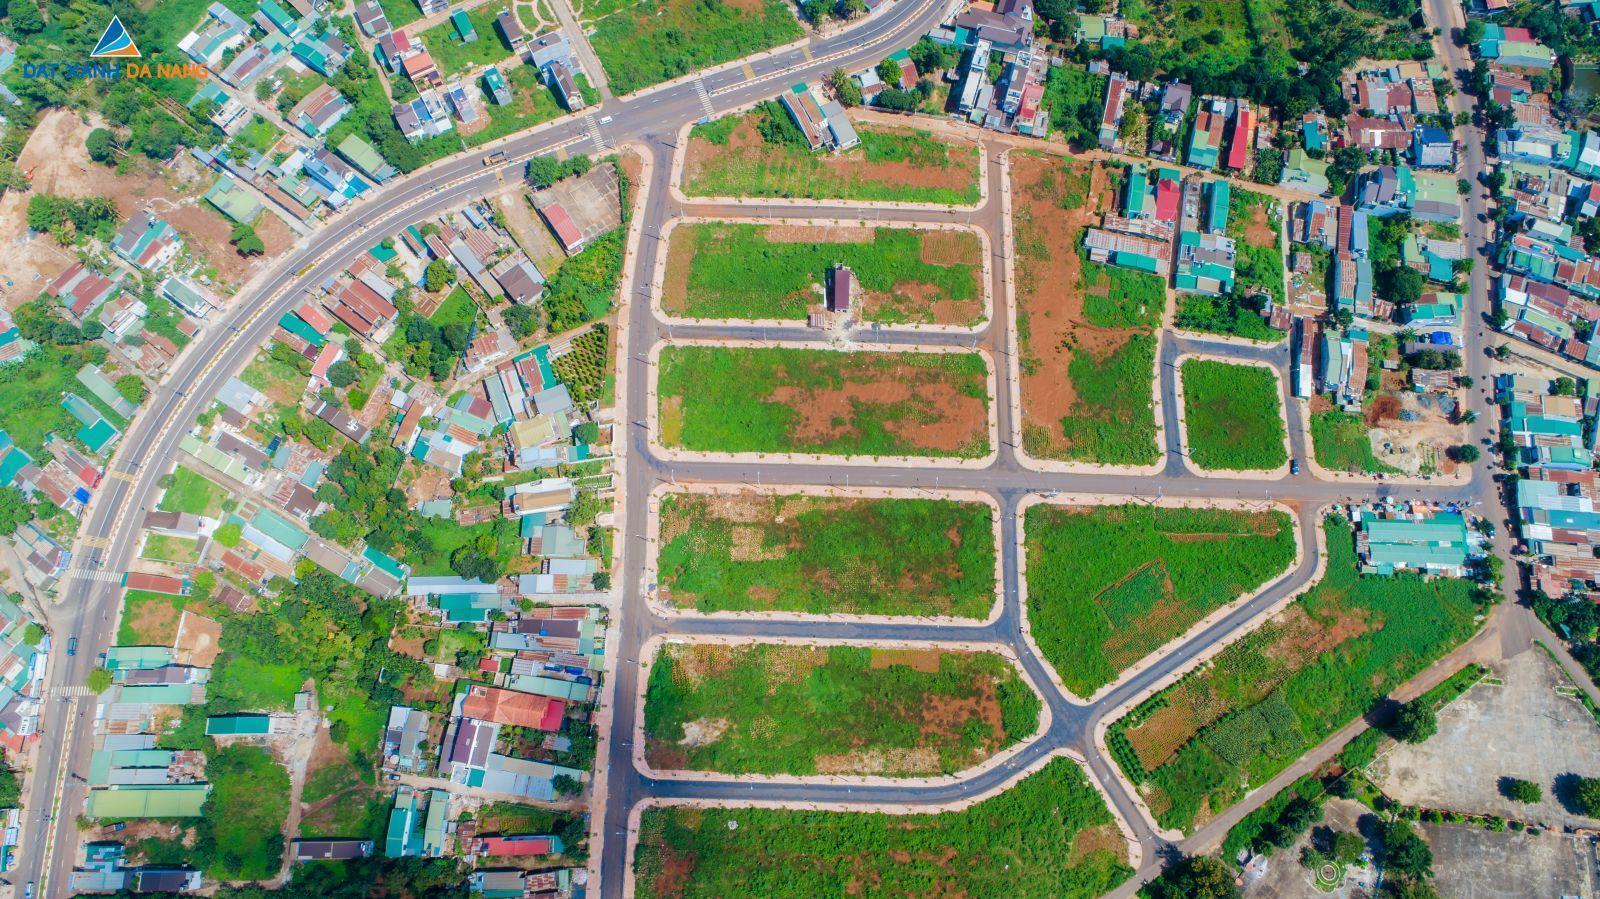 [GÓC CẬP NHẬT] DỰ ÁN KHU DÂN CƯ TÂN LẬP THÁNG 10.2019 - Viet Nam Smart City